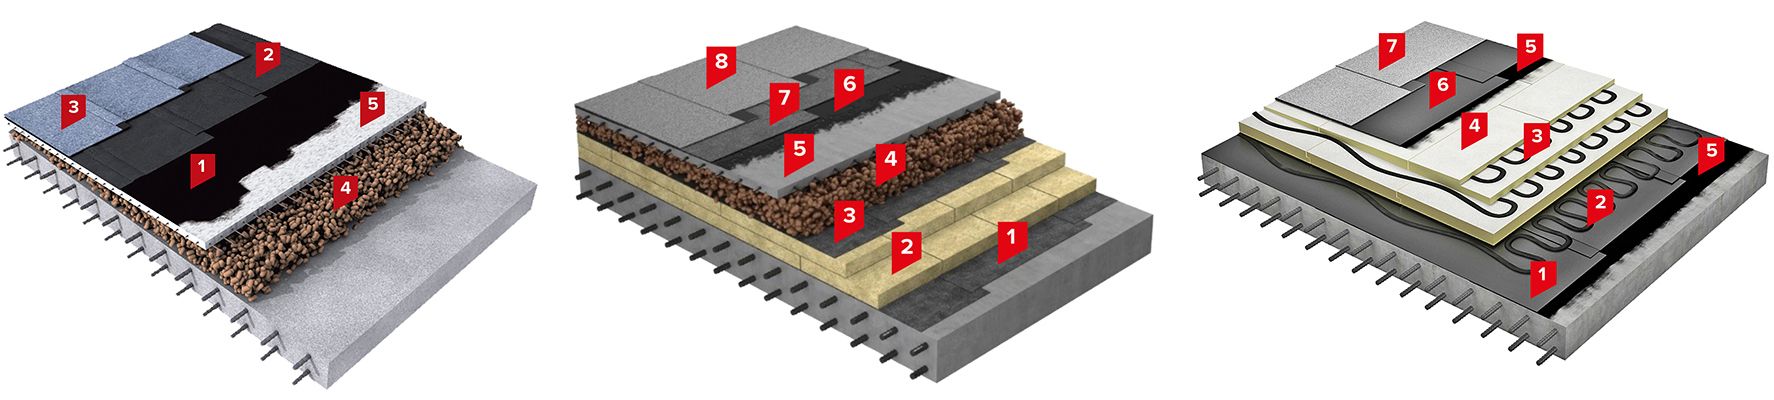 чертеж структуры слоев крыши по технологии Технониколь